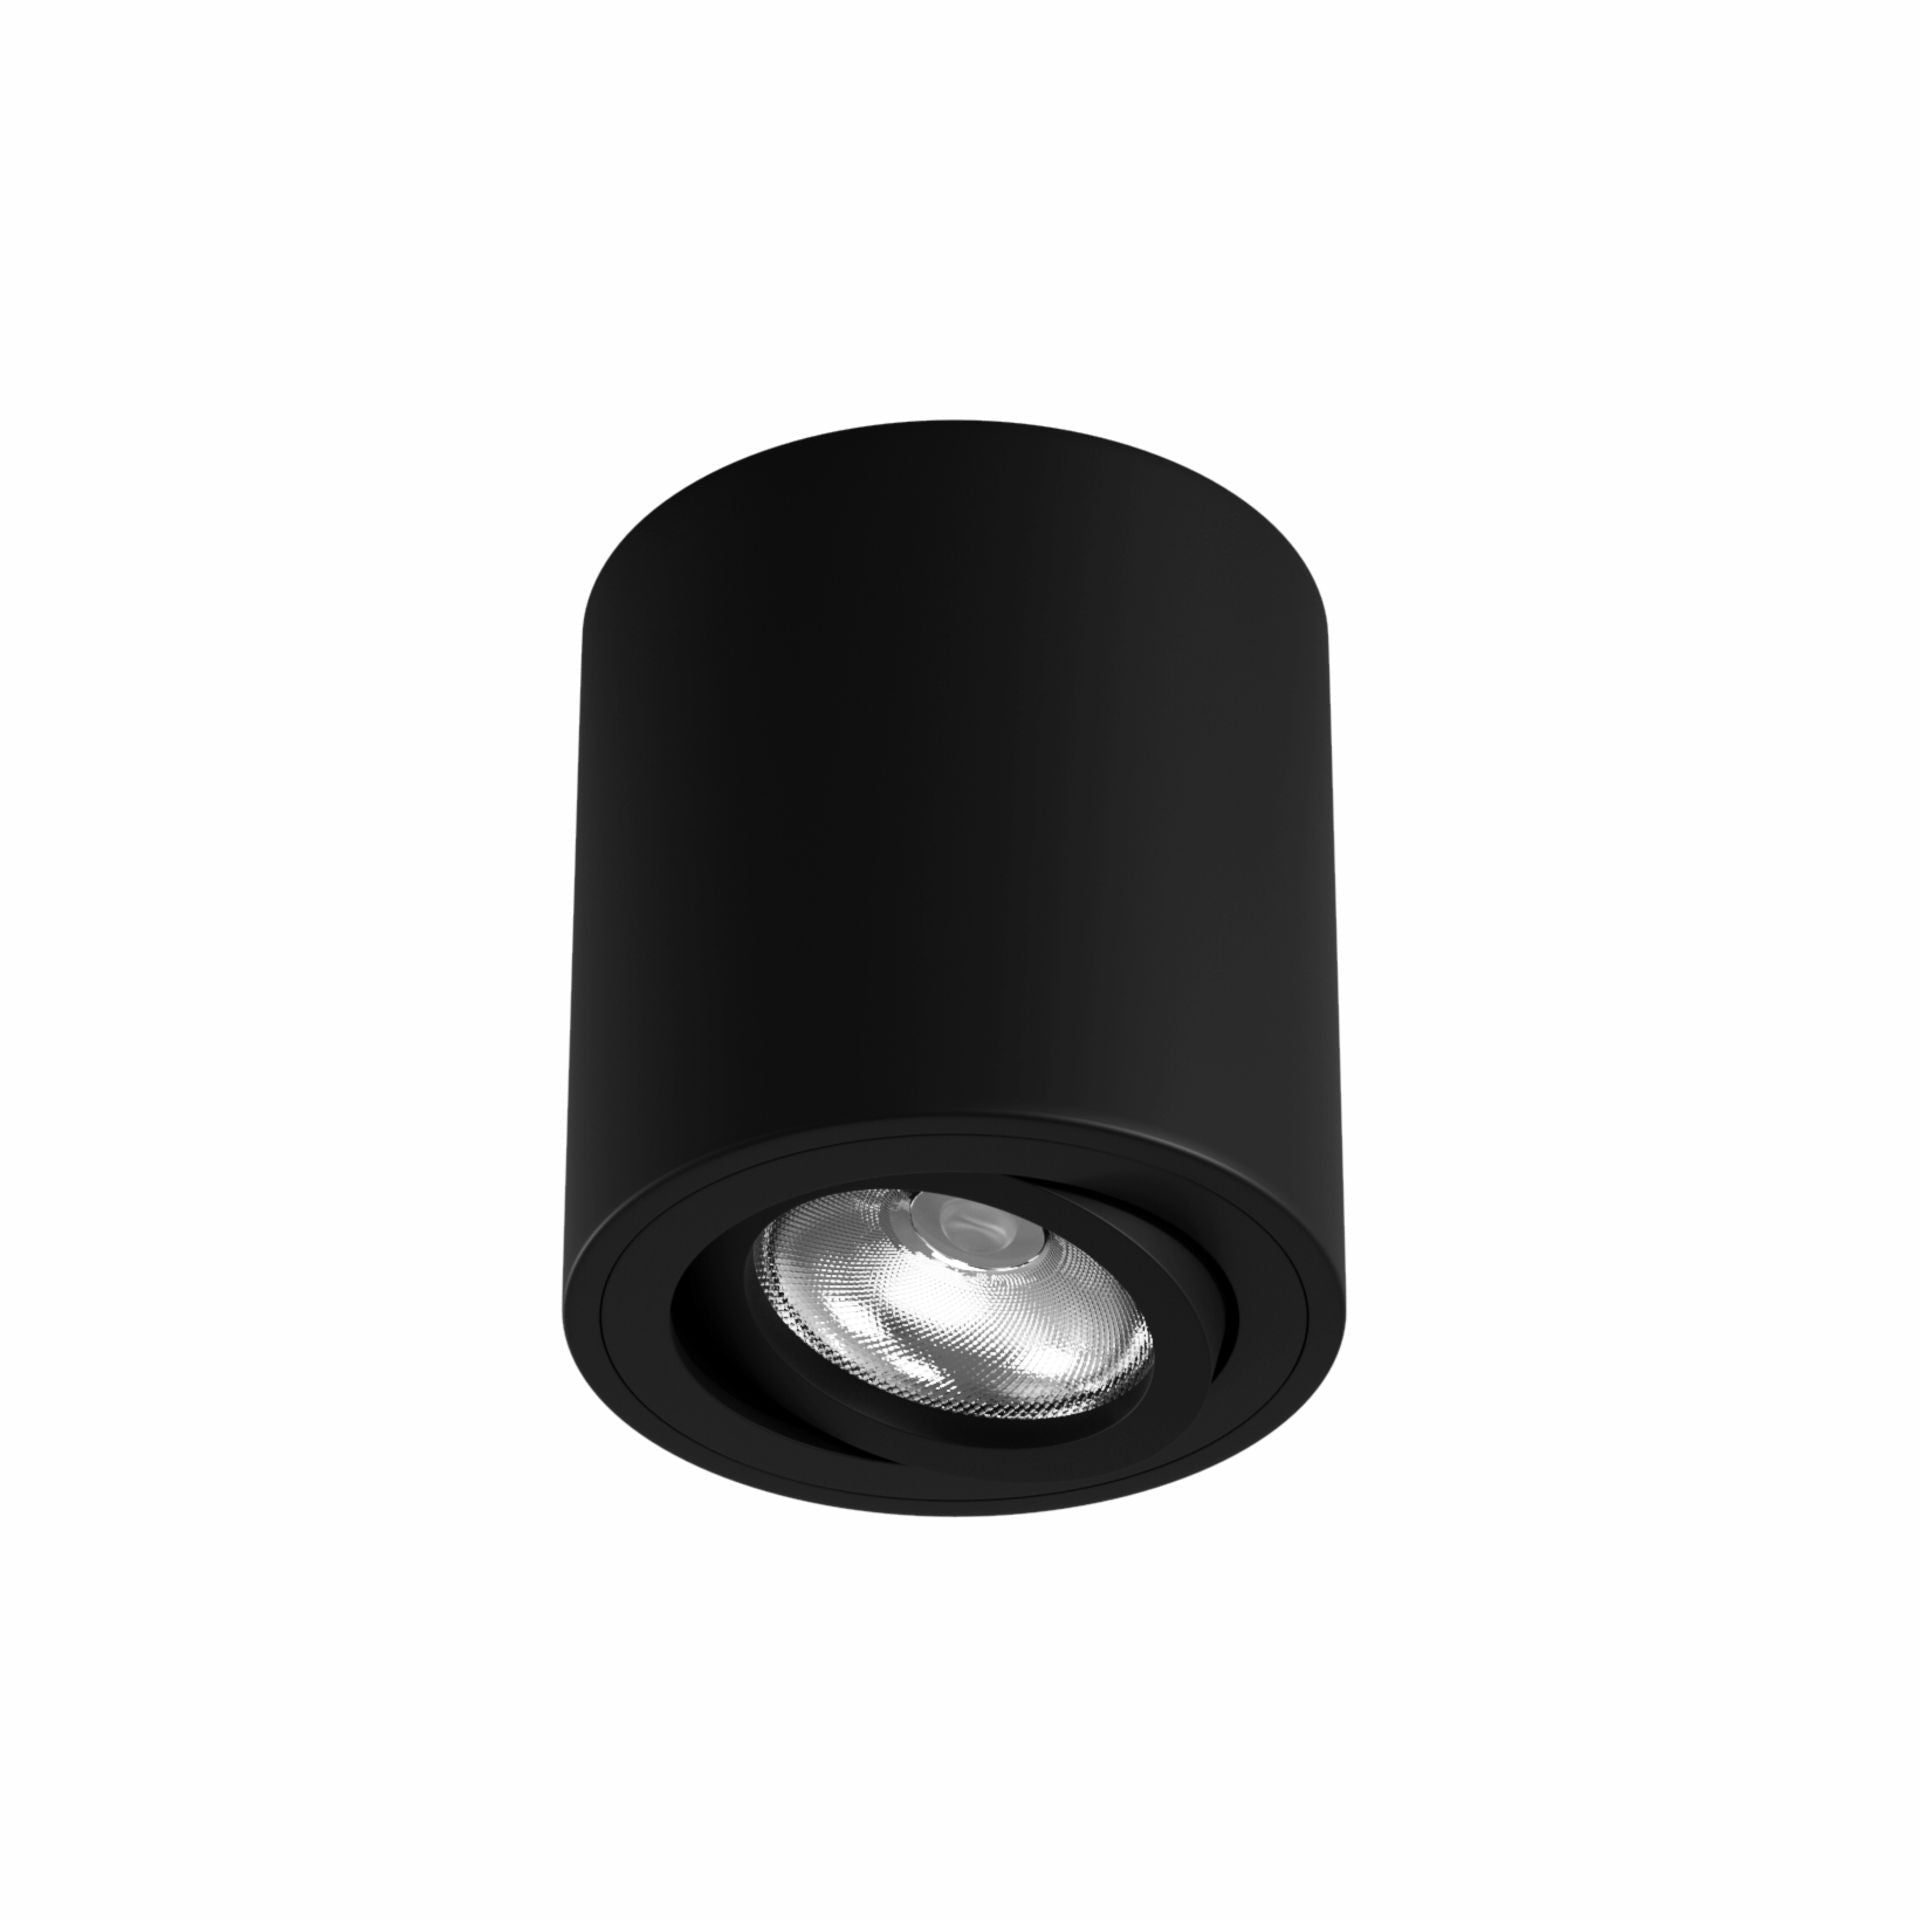 LED Deckenleuchte | 5W LED Leuchtmittel + Aluminium Aufbauleuchte | passt zu jedem Interieur | in schwarz oder in weiß